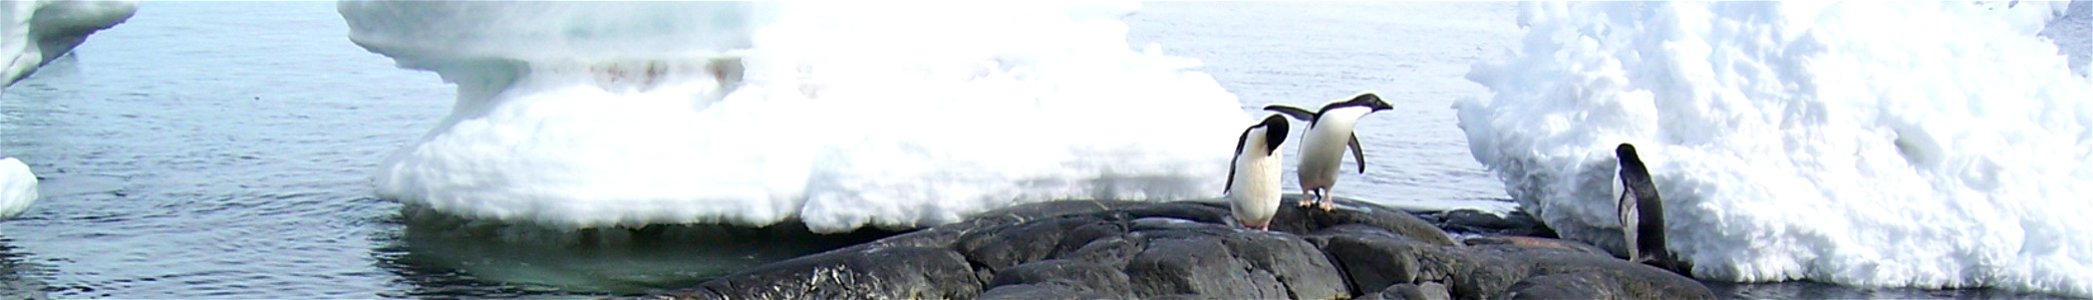 Adelie penguins at Île des Pétrels, near Dumont d'Urville Station photo